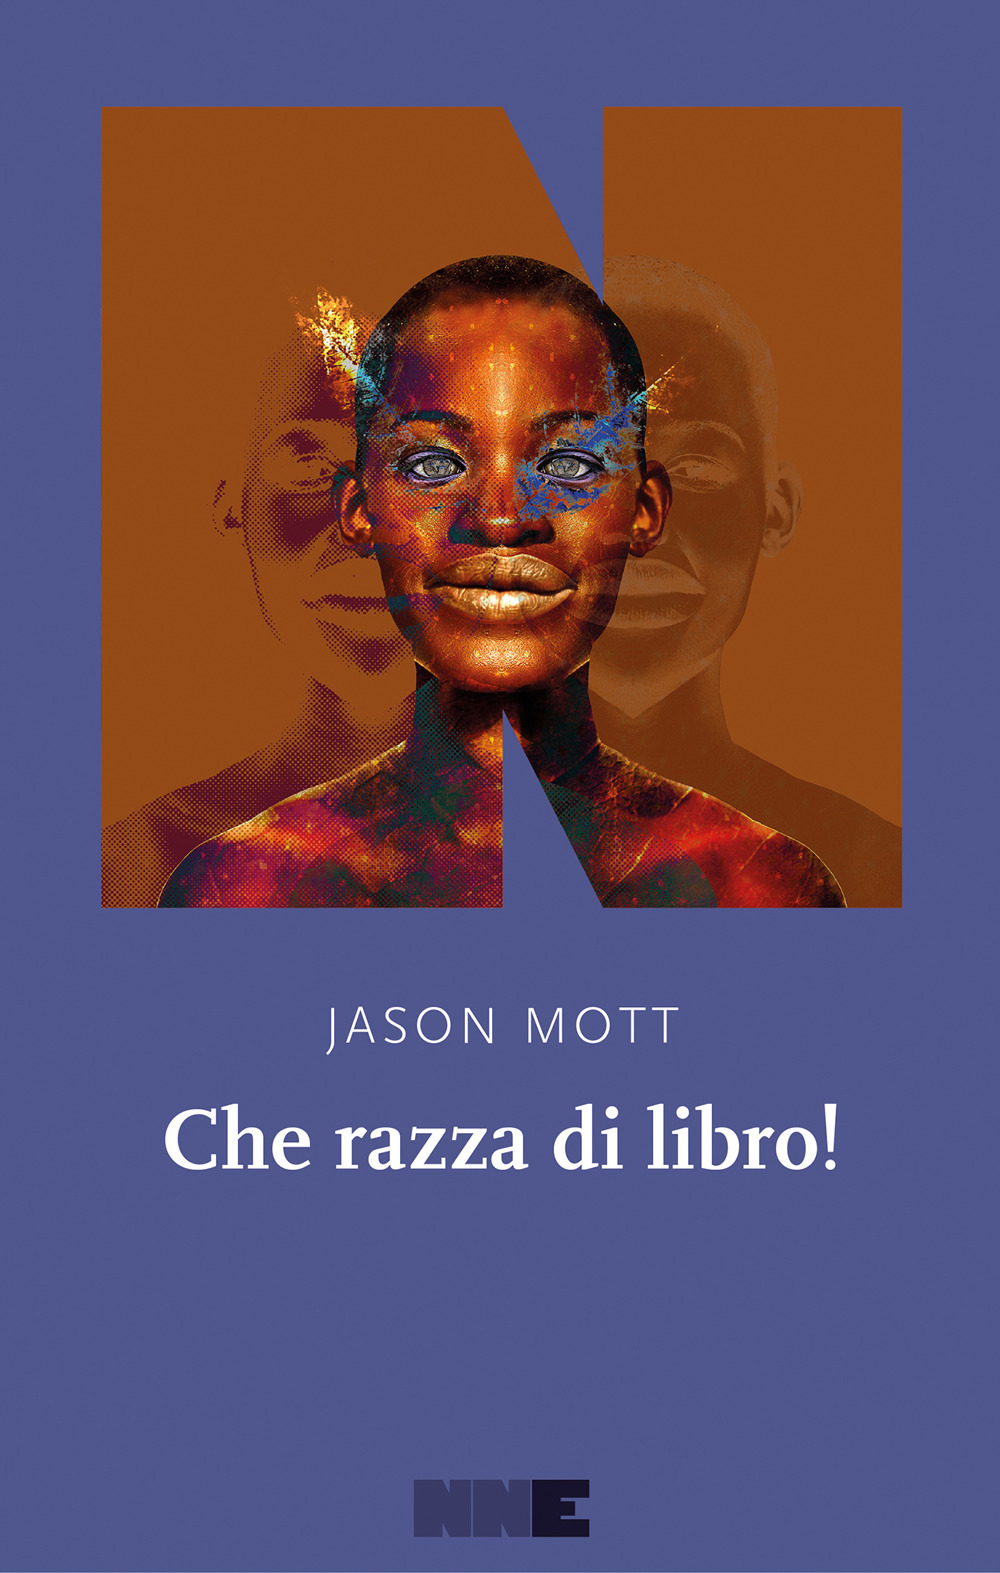 Libri Jason Mott - Che Razza Di Libro! NUOVO SIGILLATO, EDIZIONE DEL 12/05/2022 SUBITO DISPONIBILE